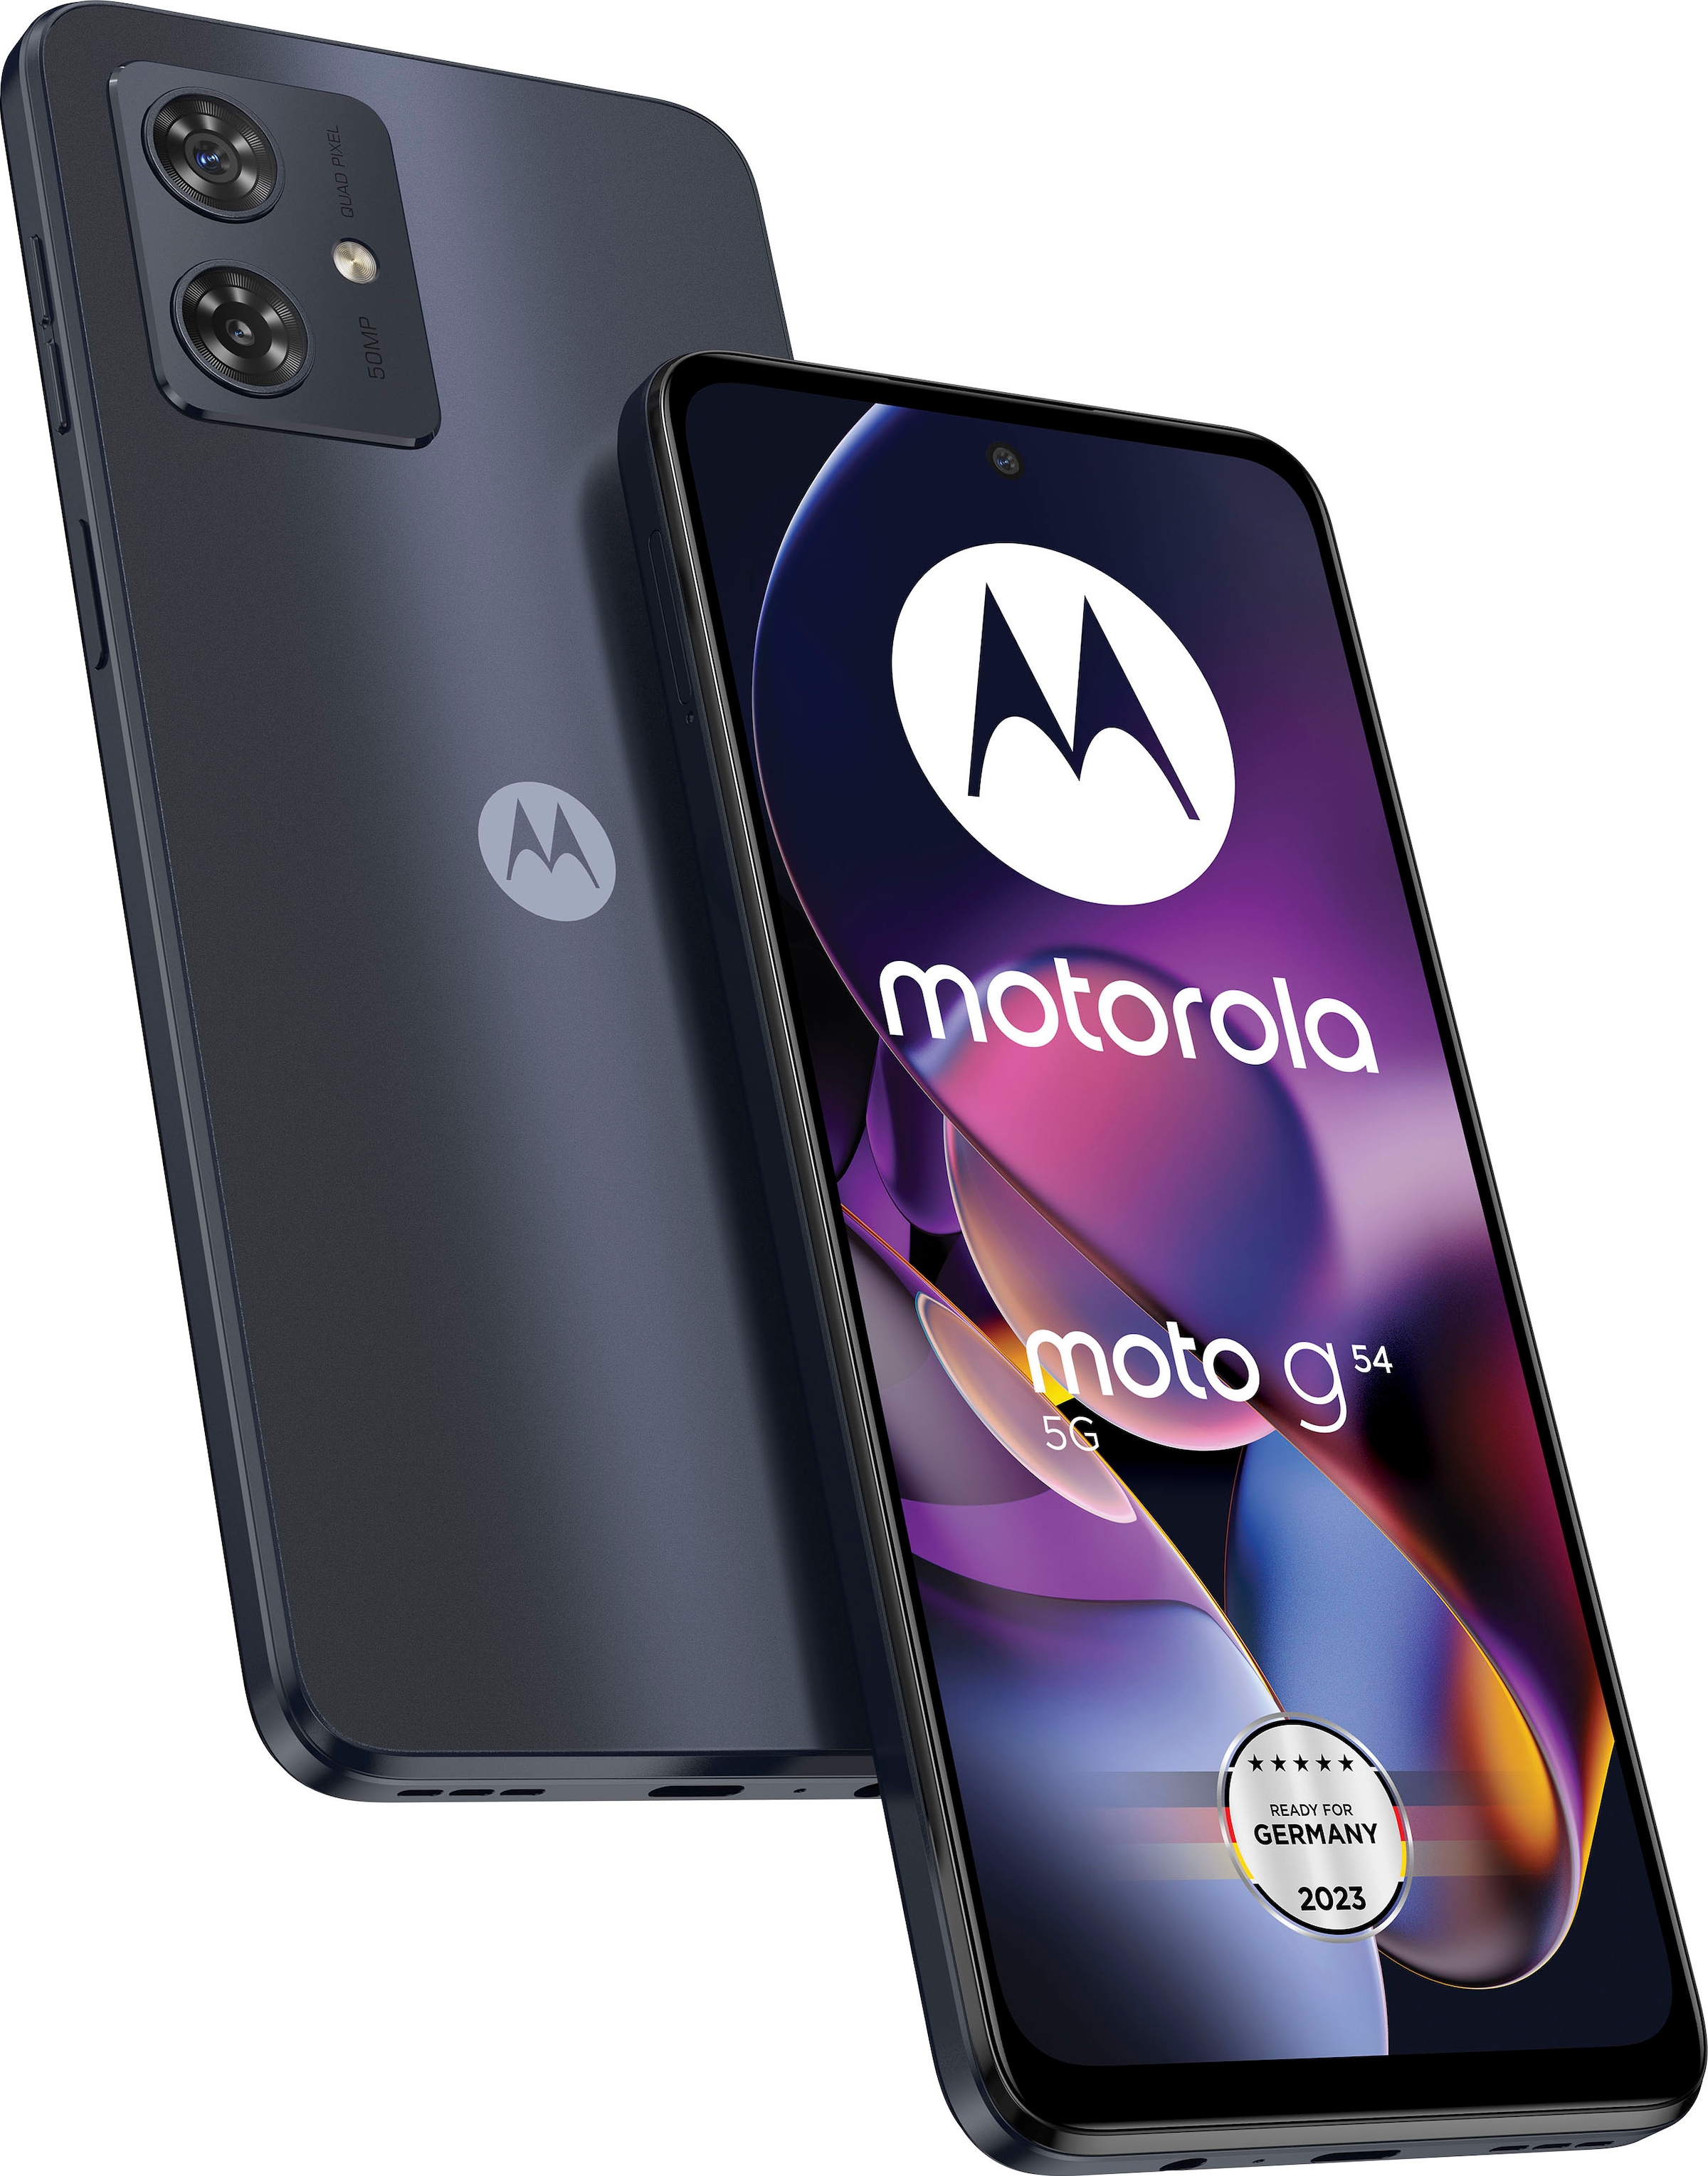 Motorola Smartphone »MOTOROLA moto g54«, mint grün, 16,51 cm/6,5 Zoll, 256 GB  Speicherplatz, 50 MP Kamera auf Raten bestellen